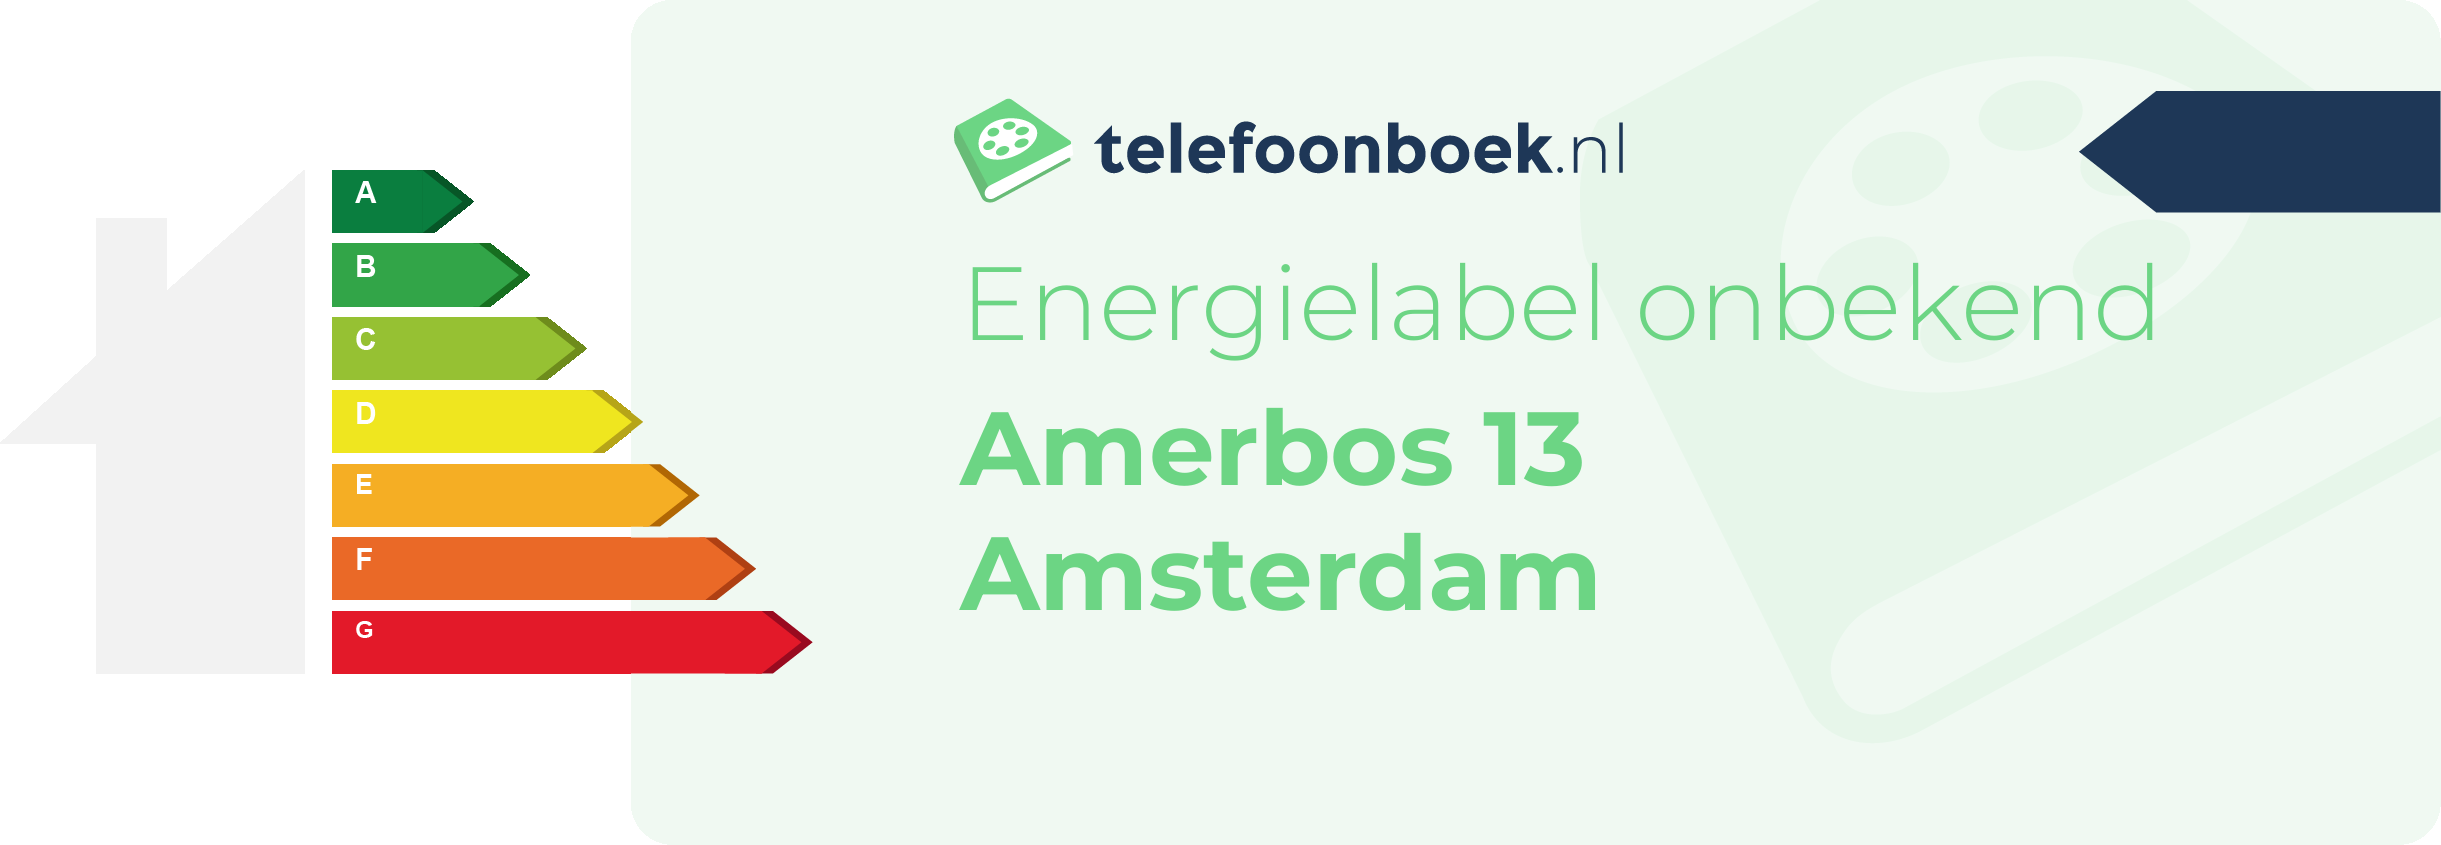 Energielabel Amerbos 13 Amsterdam